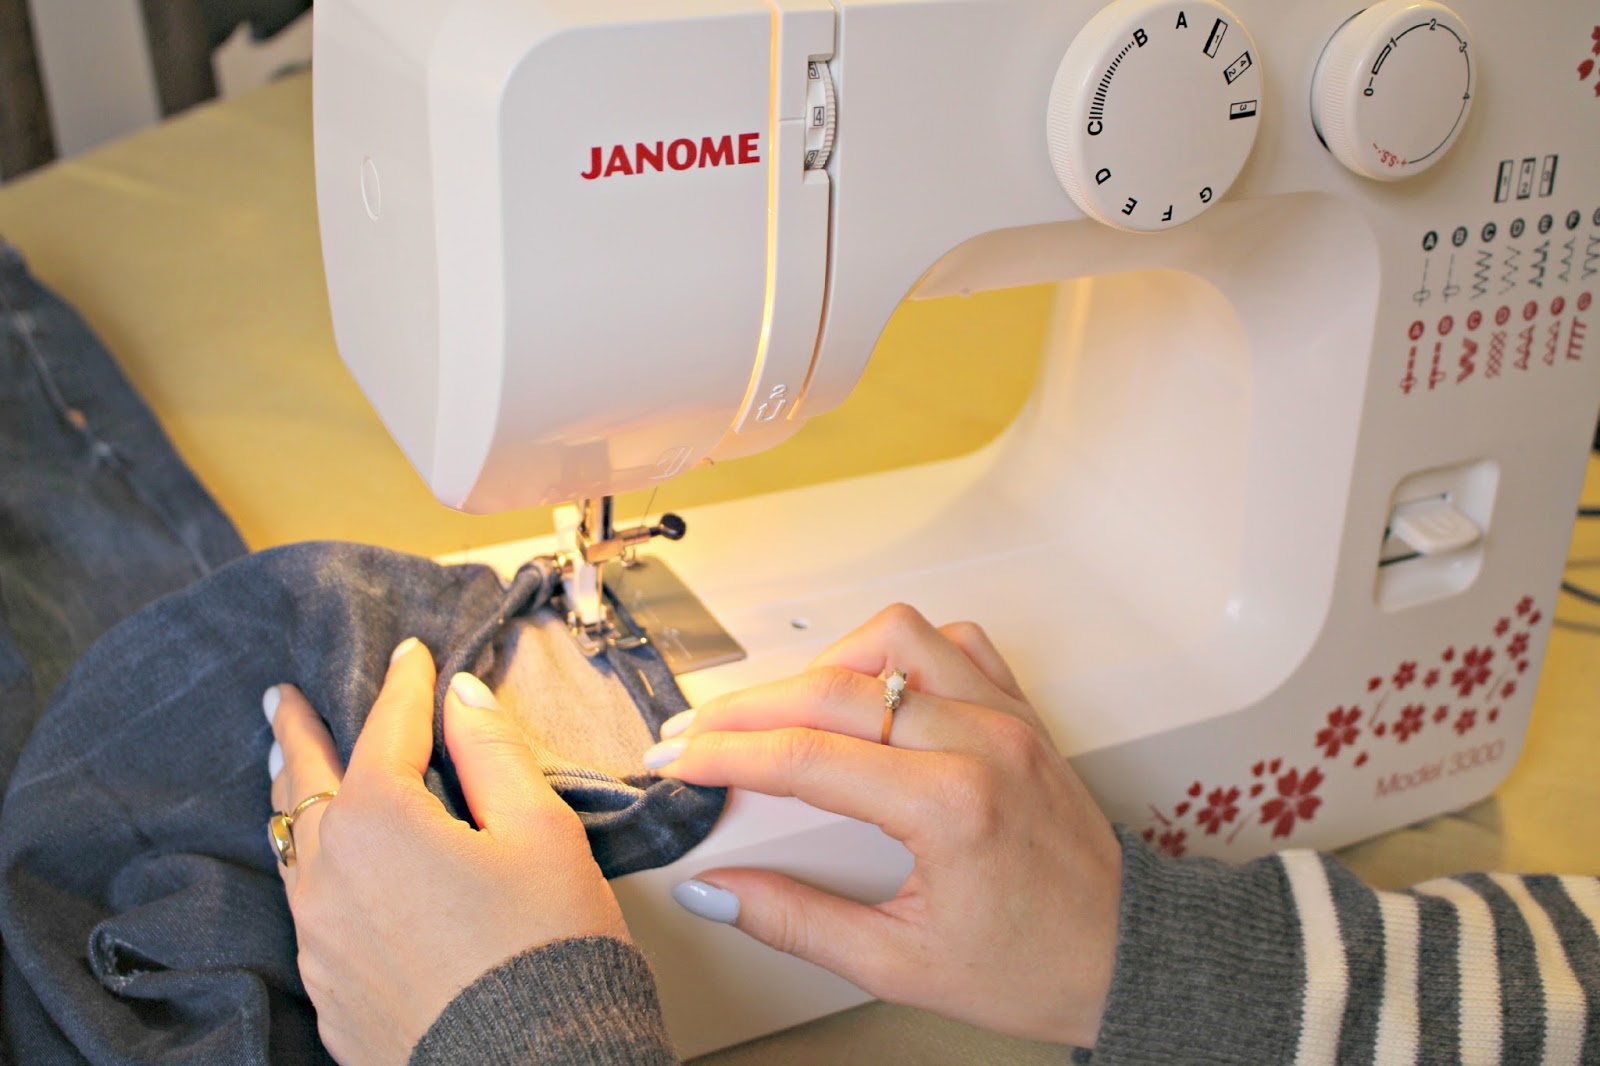 Роликов швейная машинка. Швейная машинка Джаноме джинс. Джаноме Фэмили швейная машинка. Машинка для шитья Janome. Шитя на швейней машине.